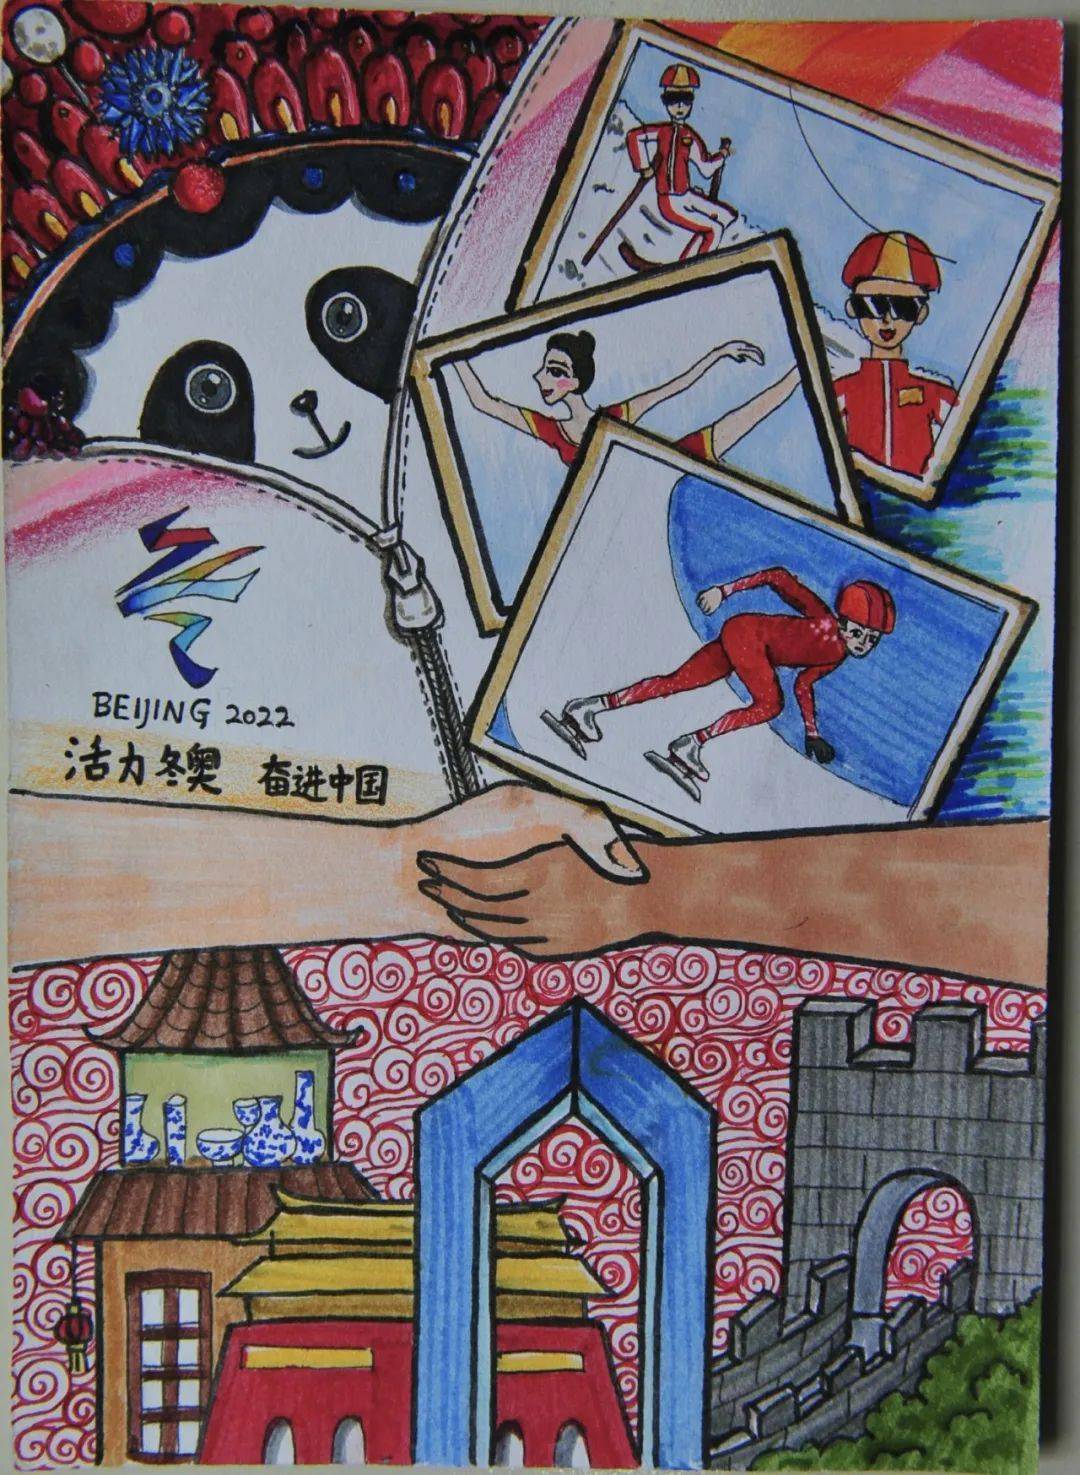 丰台区关工委组织小学生用绘画为北京冬奥加油助力